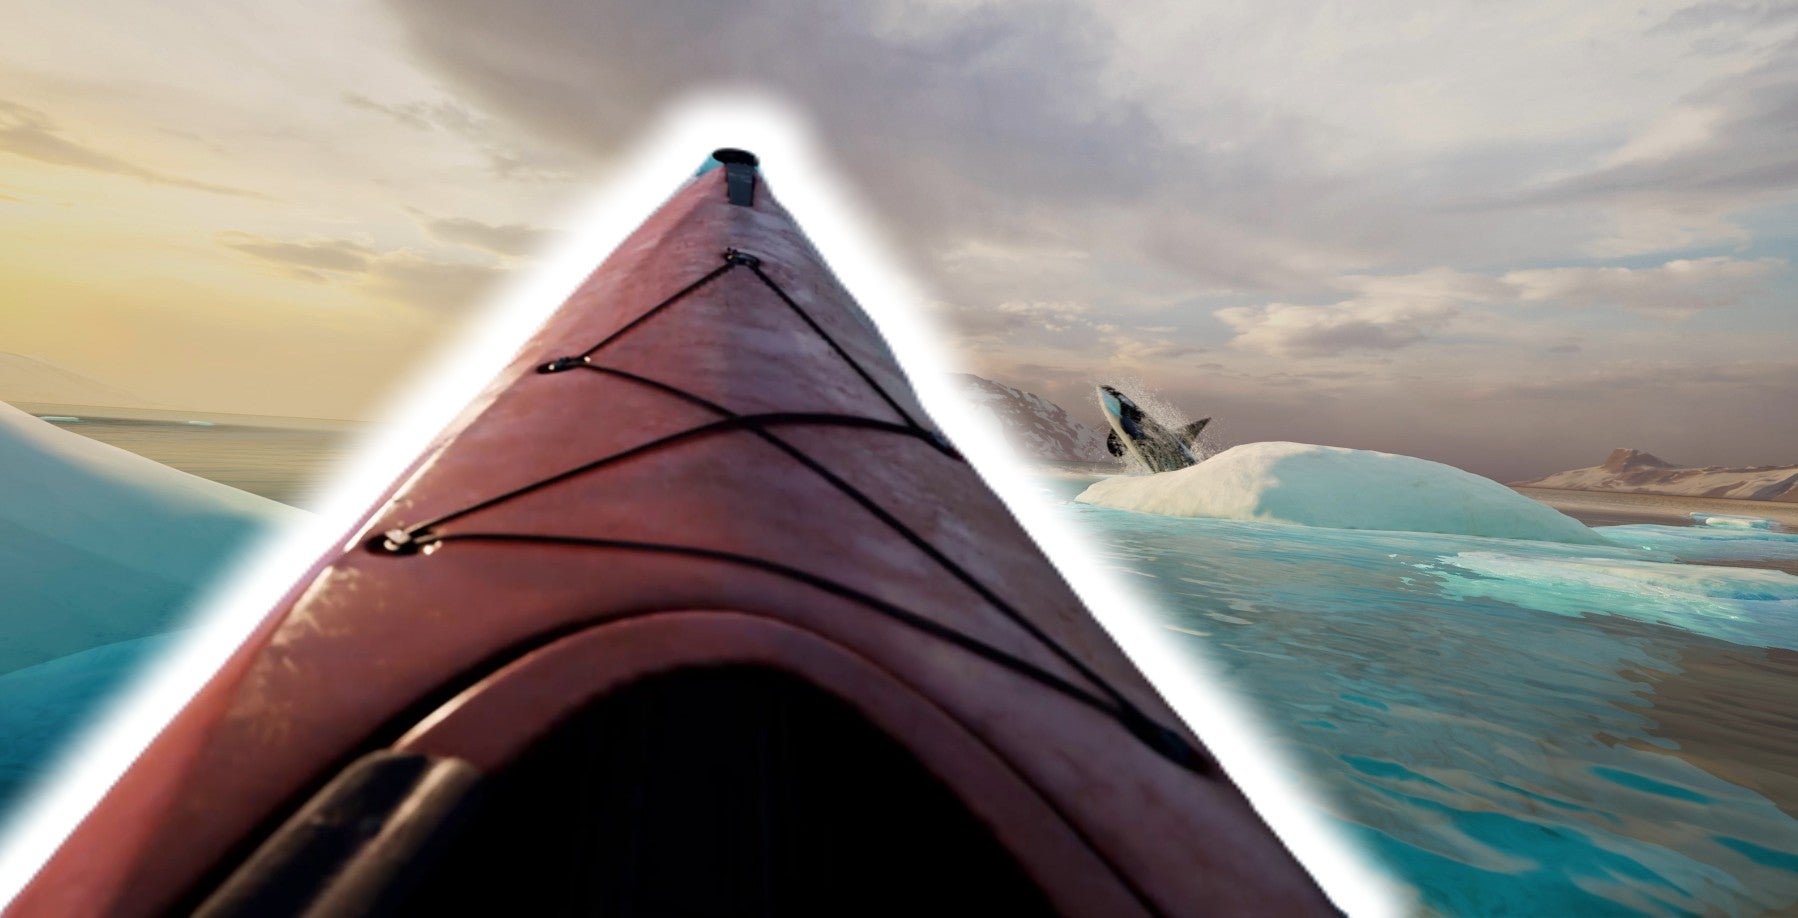 Kayak-VR-Mirage-Mit-PlayStation-VR2-k-nnt-ihr-besser-Urlaub-machen